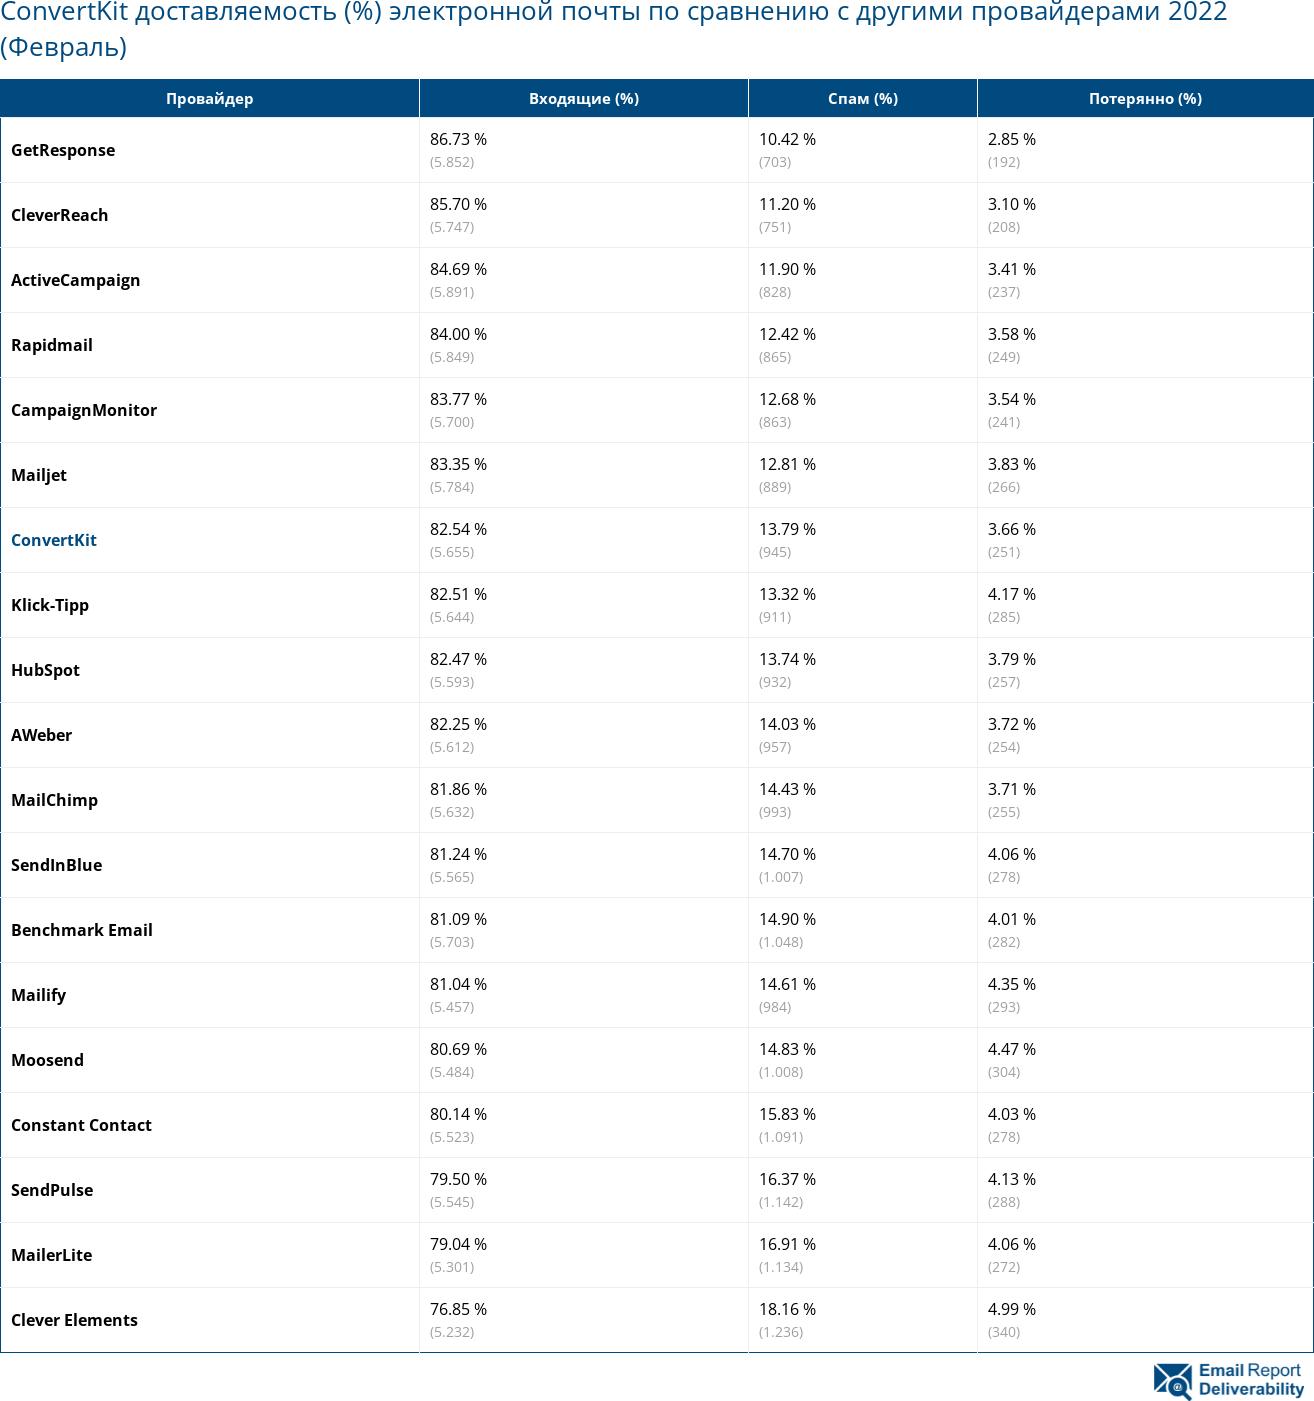 ConvertKit доставляемость (%) электронной почты по сравнению с другими провайдерами 2022 (Февраль)